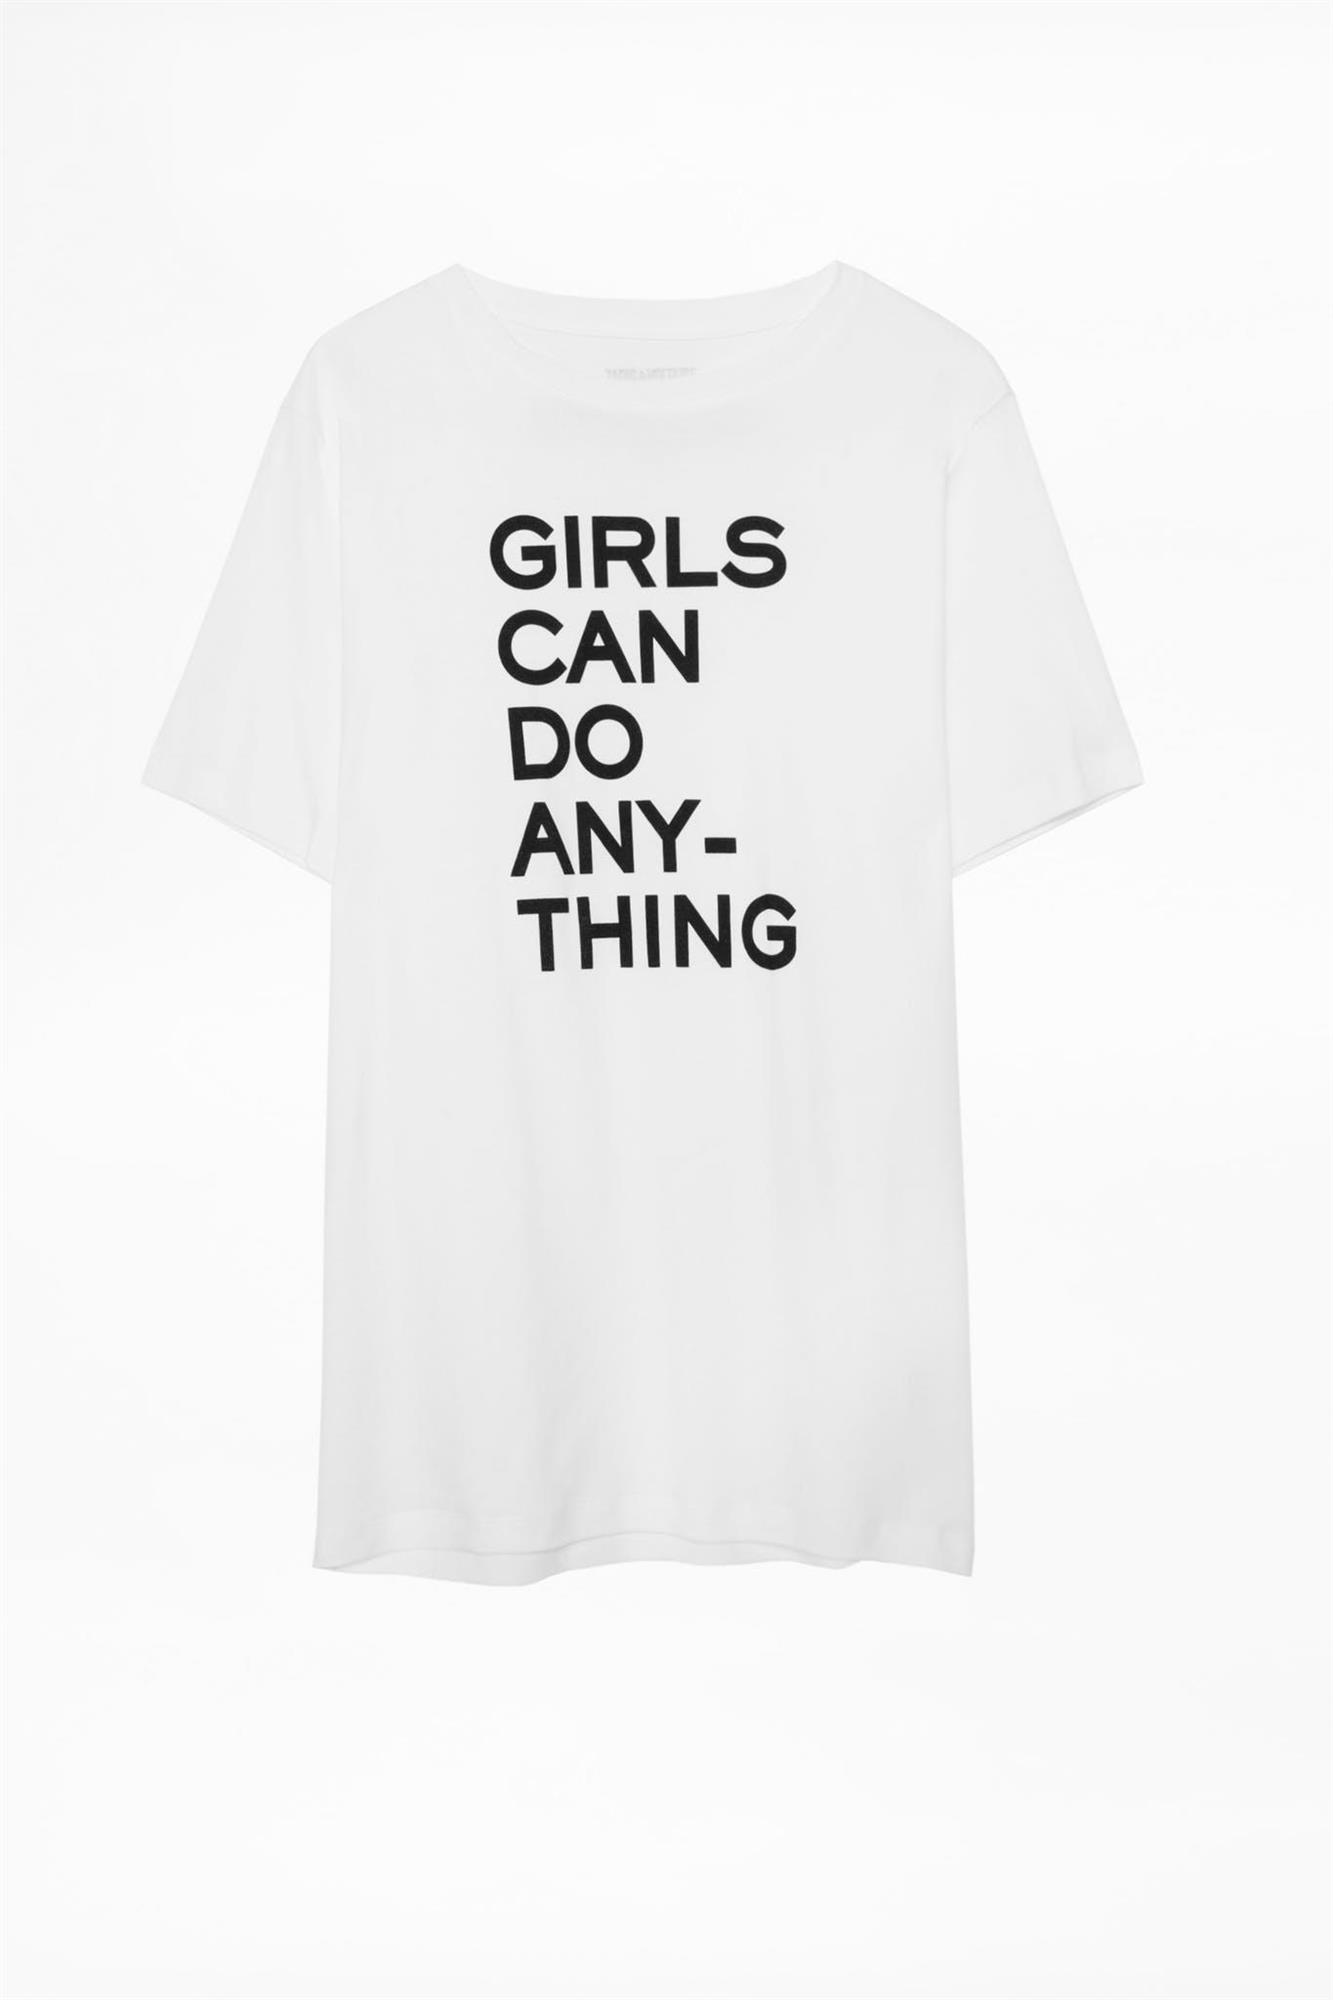 Camiseta con mensaje "Girls can do anything" de Zadig & Voltaire